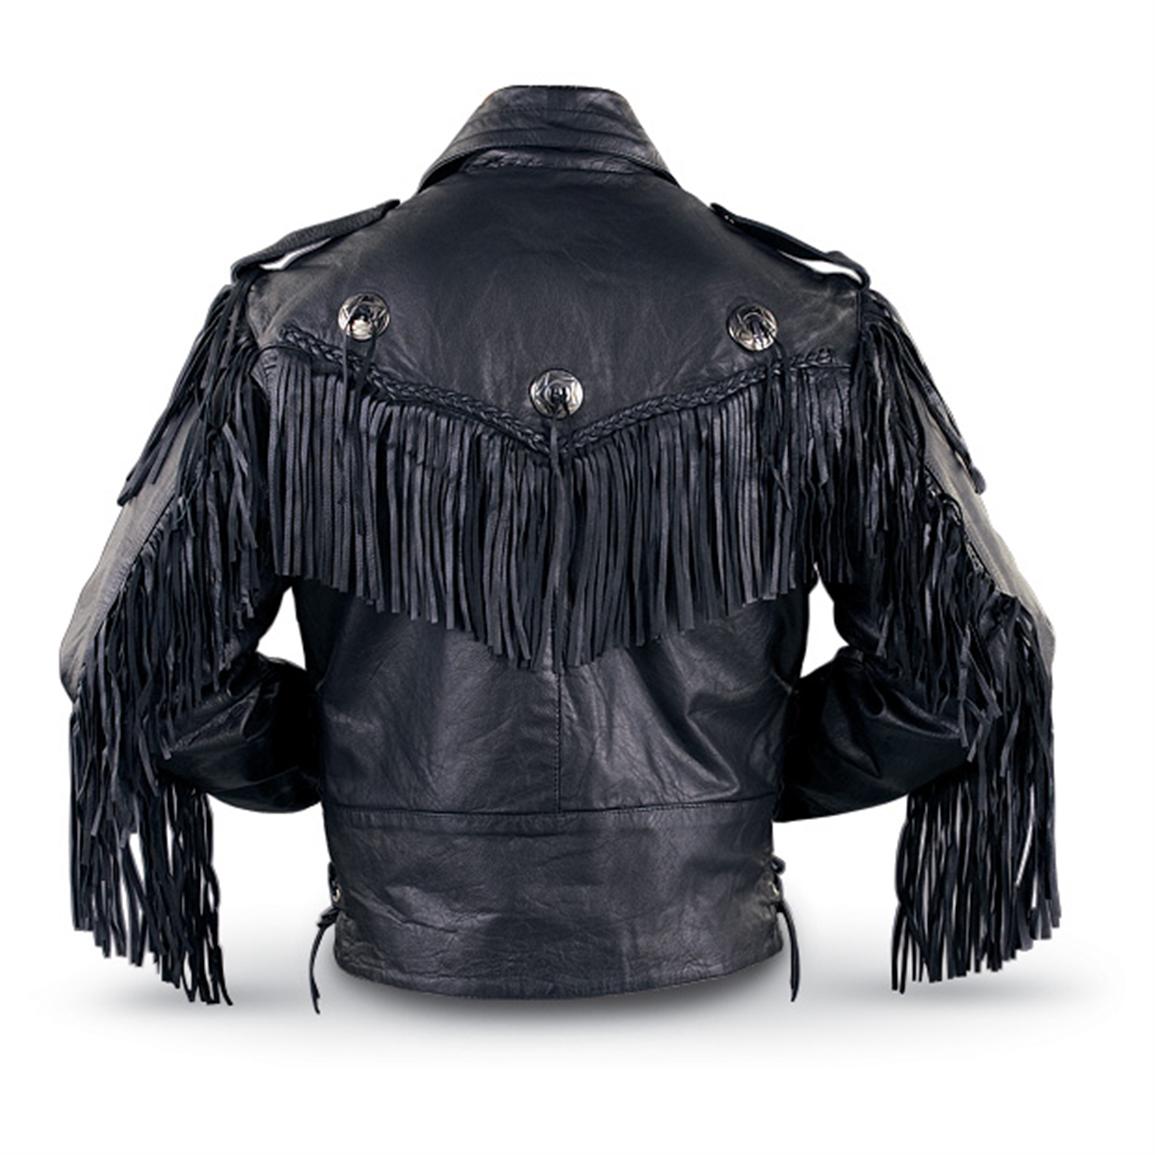 Men's Interstate® Fringe Jacket, Black - 117077, at Sportsman's Guide